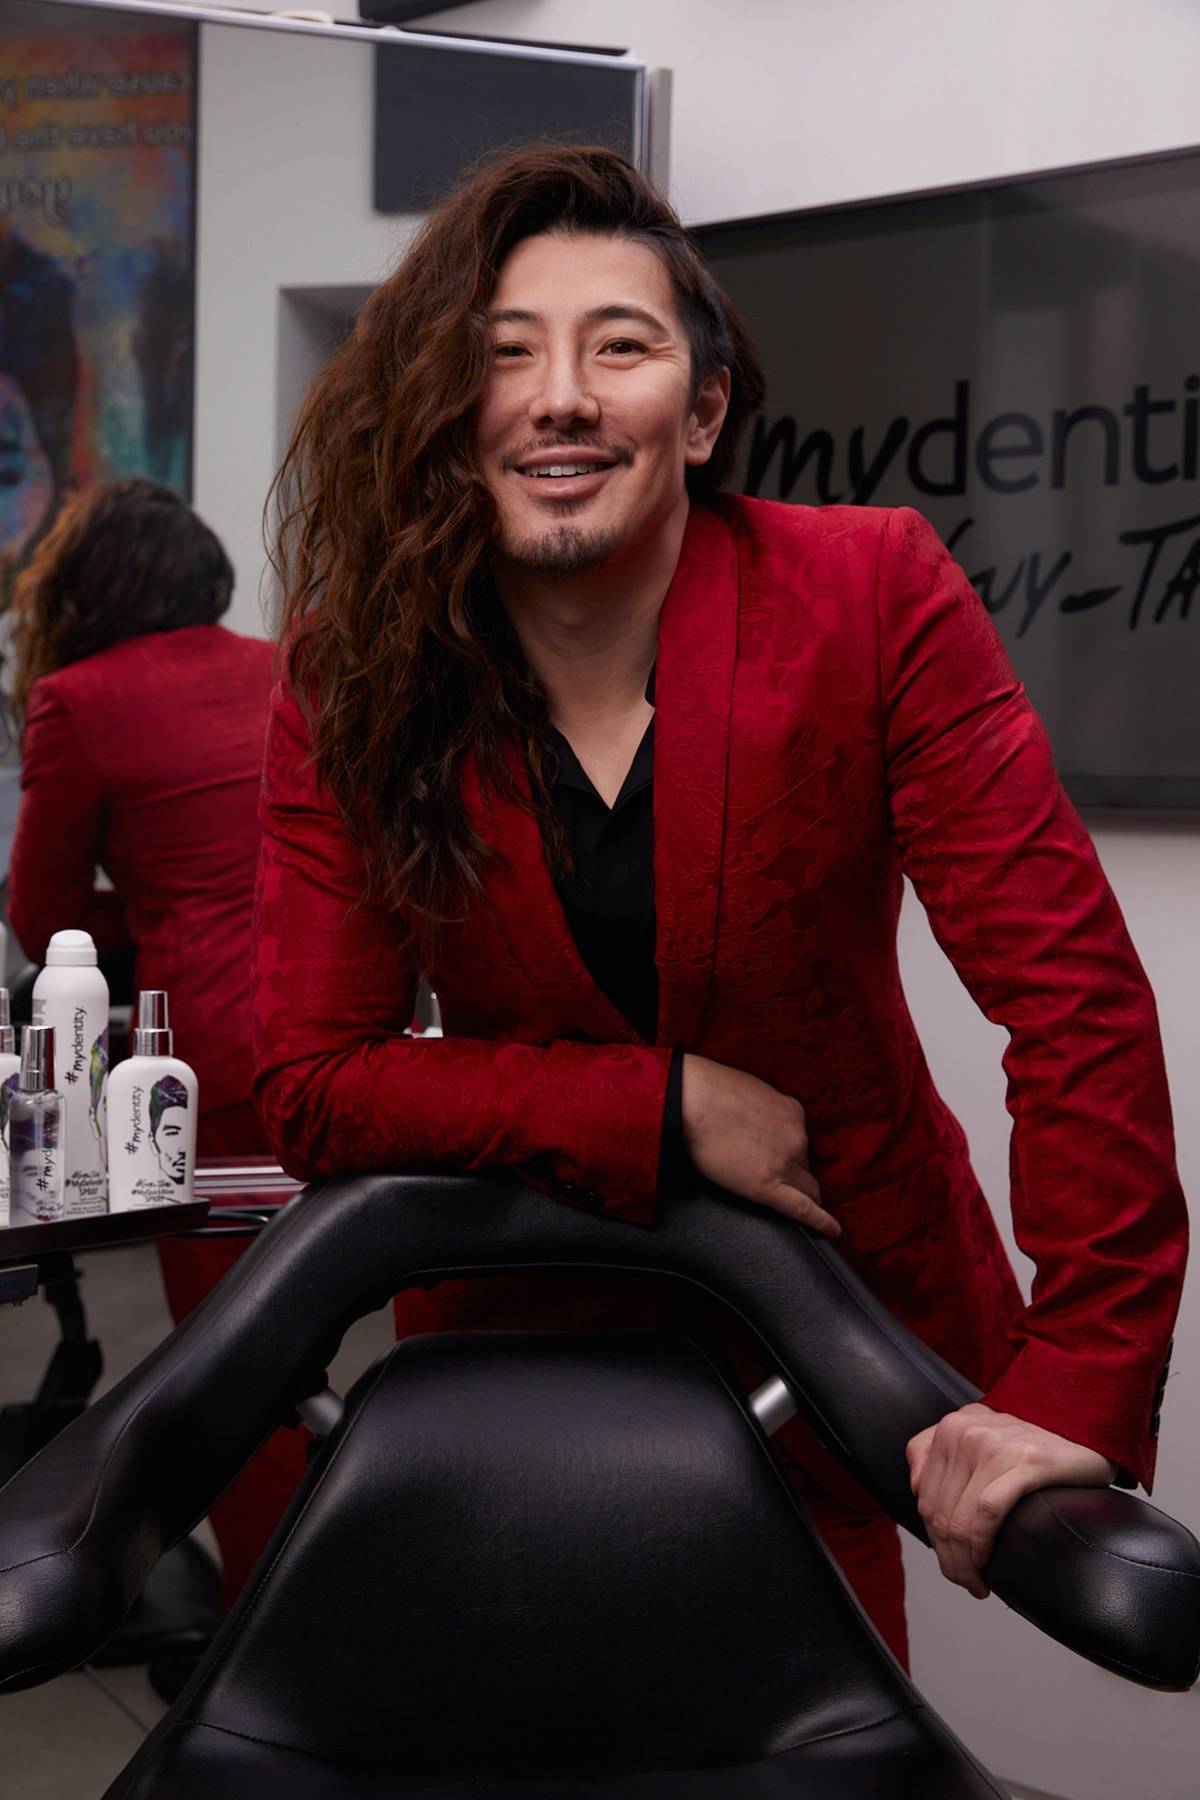 15 września w Warszawie odbędzie się jedno z najciekawszych wydarzeń fryzjerskich tego roku, w trakcie którego wystąpi Guy Tang, twórca marki Mydentity.